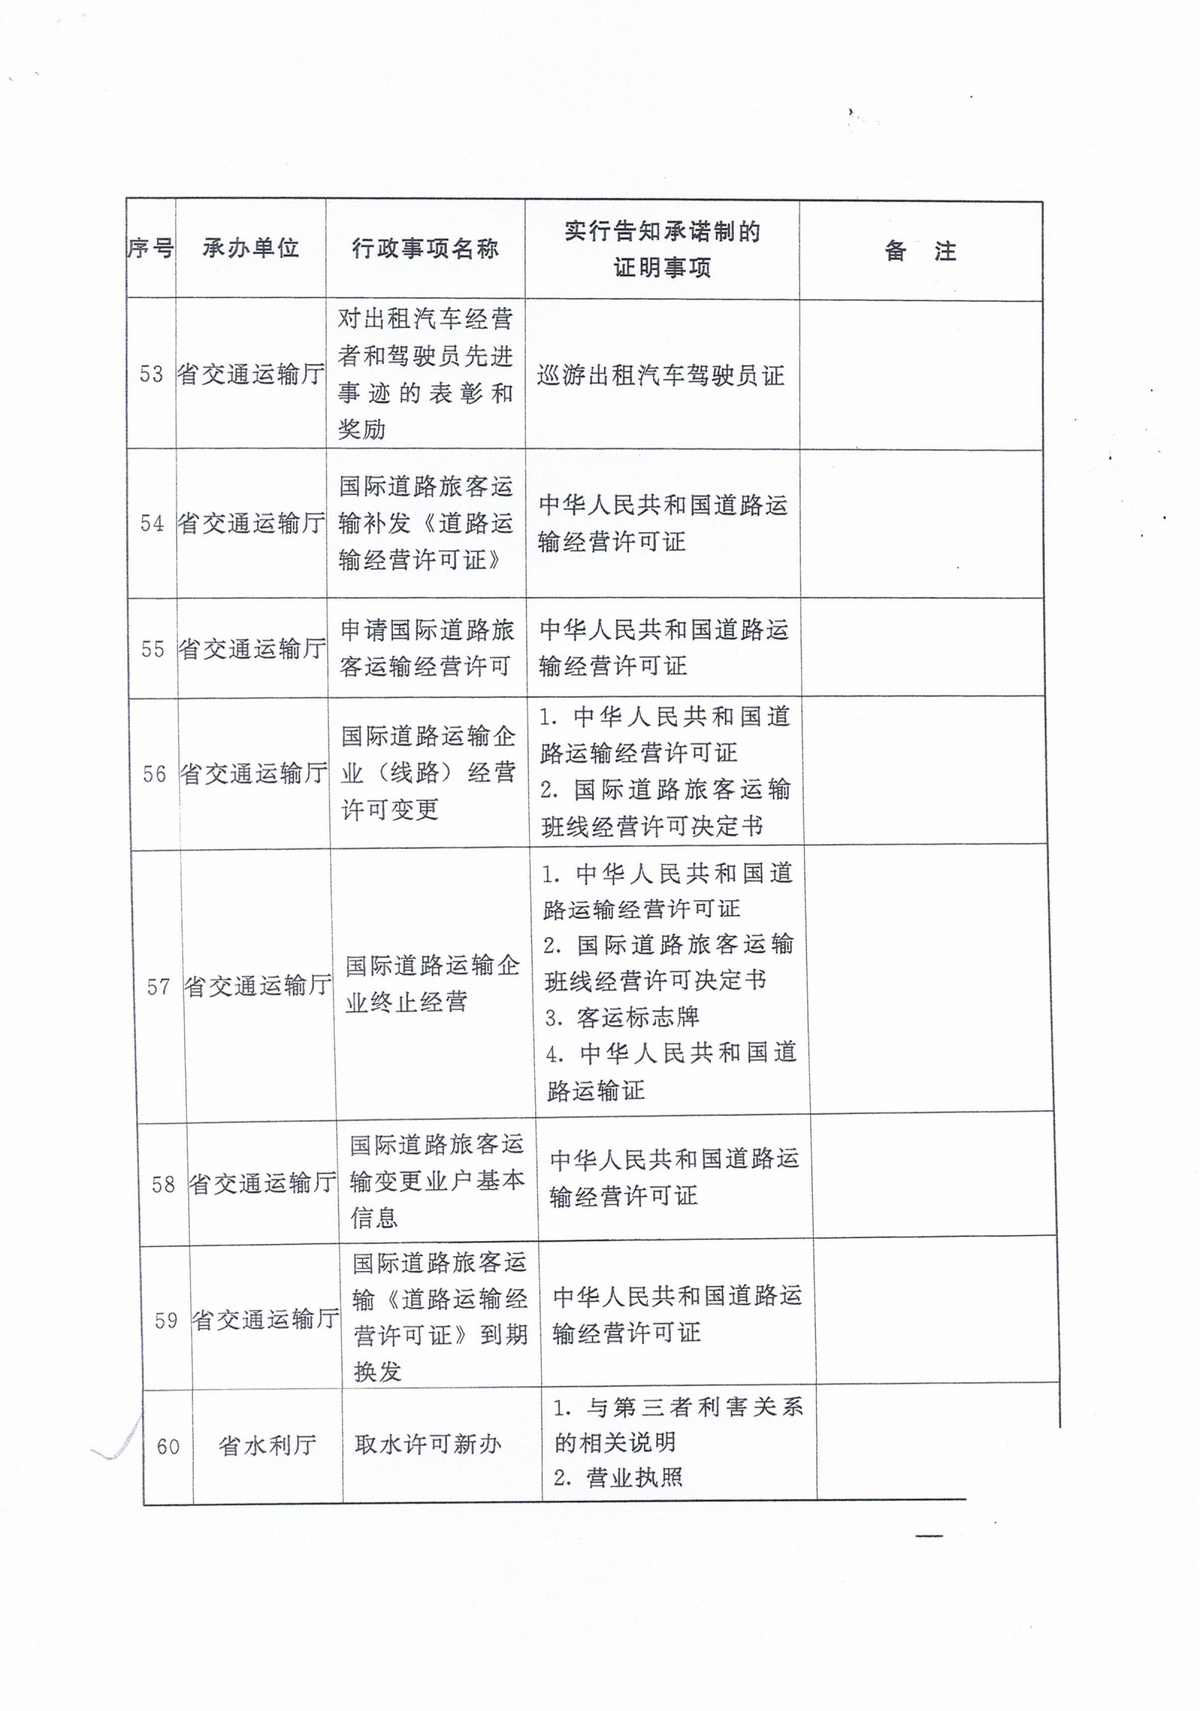 河南省水利厅关于省级证明事项告知承诺制清单的公示